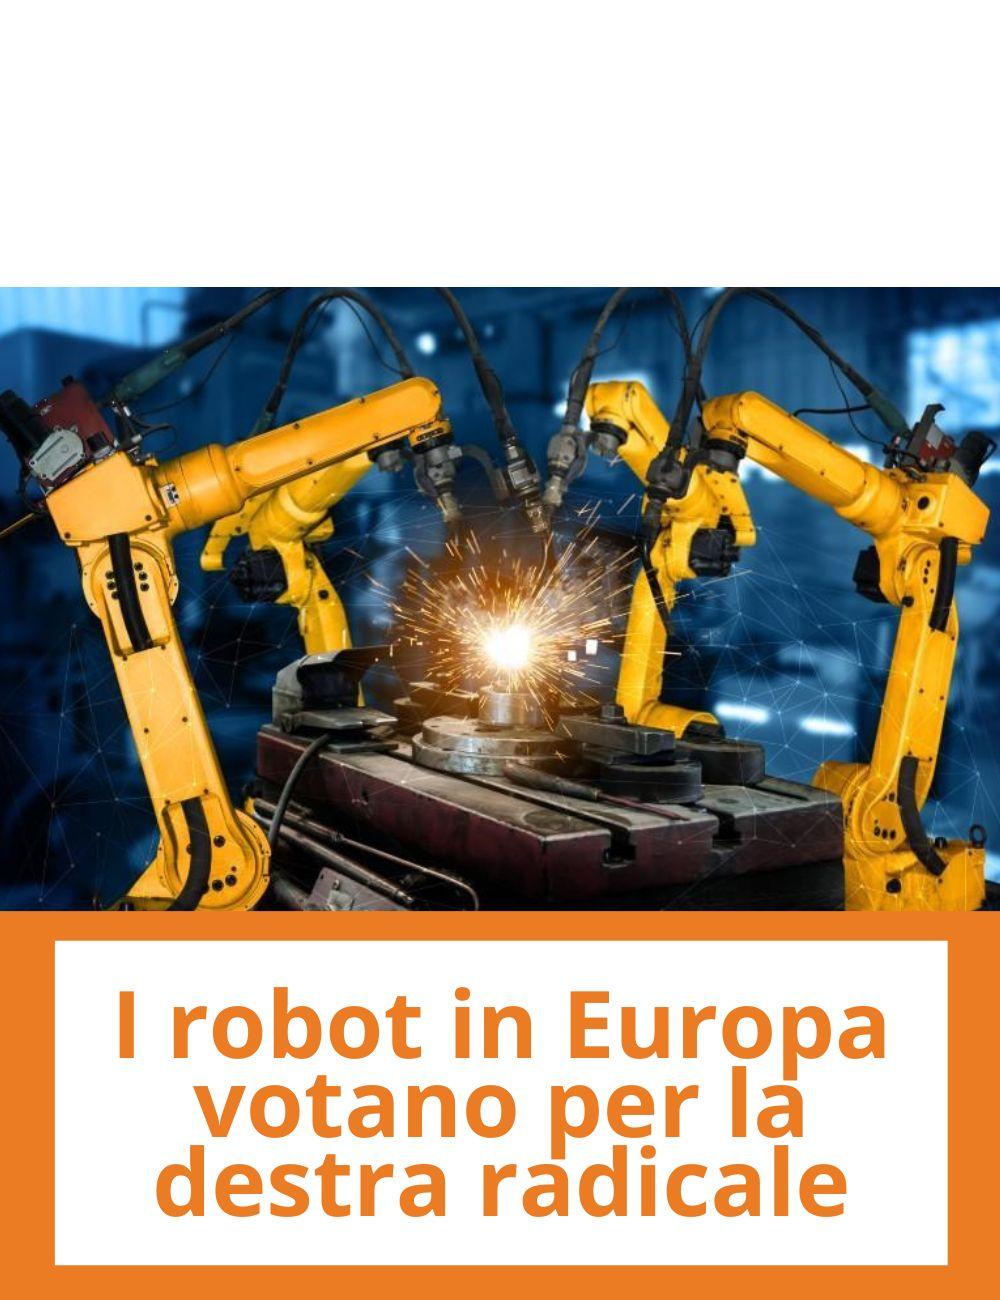 Immagine con link ad articoli su temi simili. L'immagine di robot industriali rimanda all'articolo intitolato: I robot in Europa votano per la destra radicale